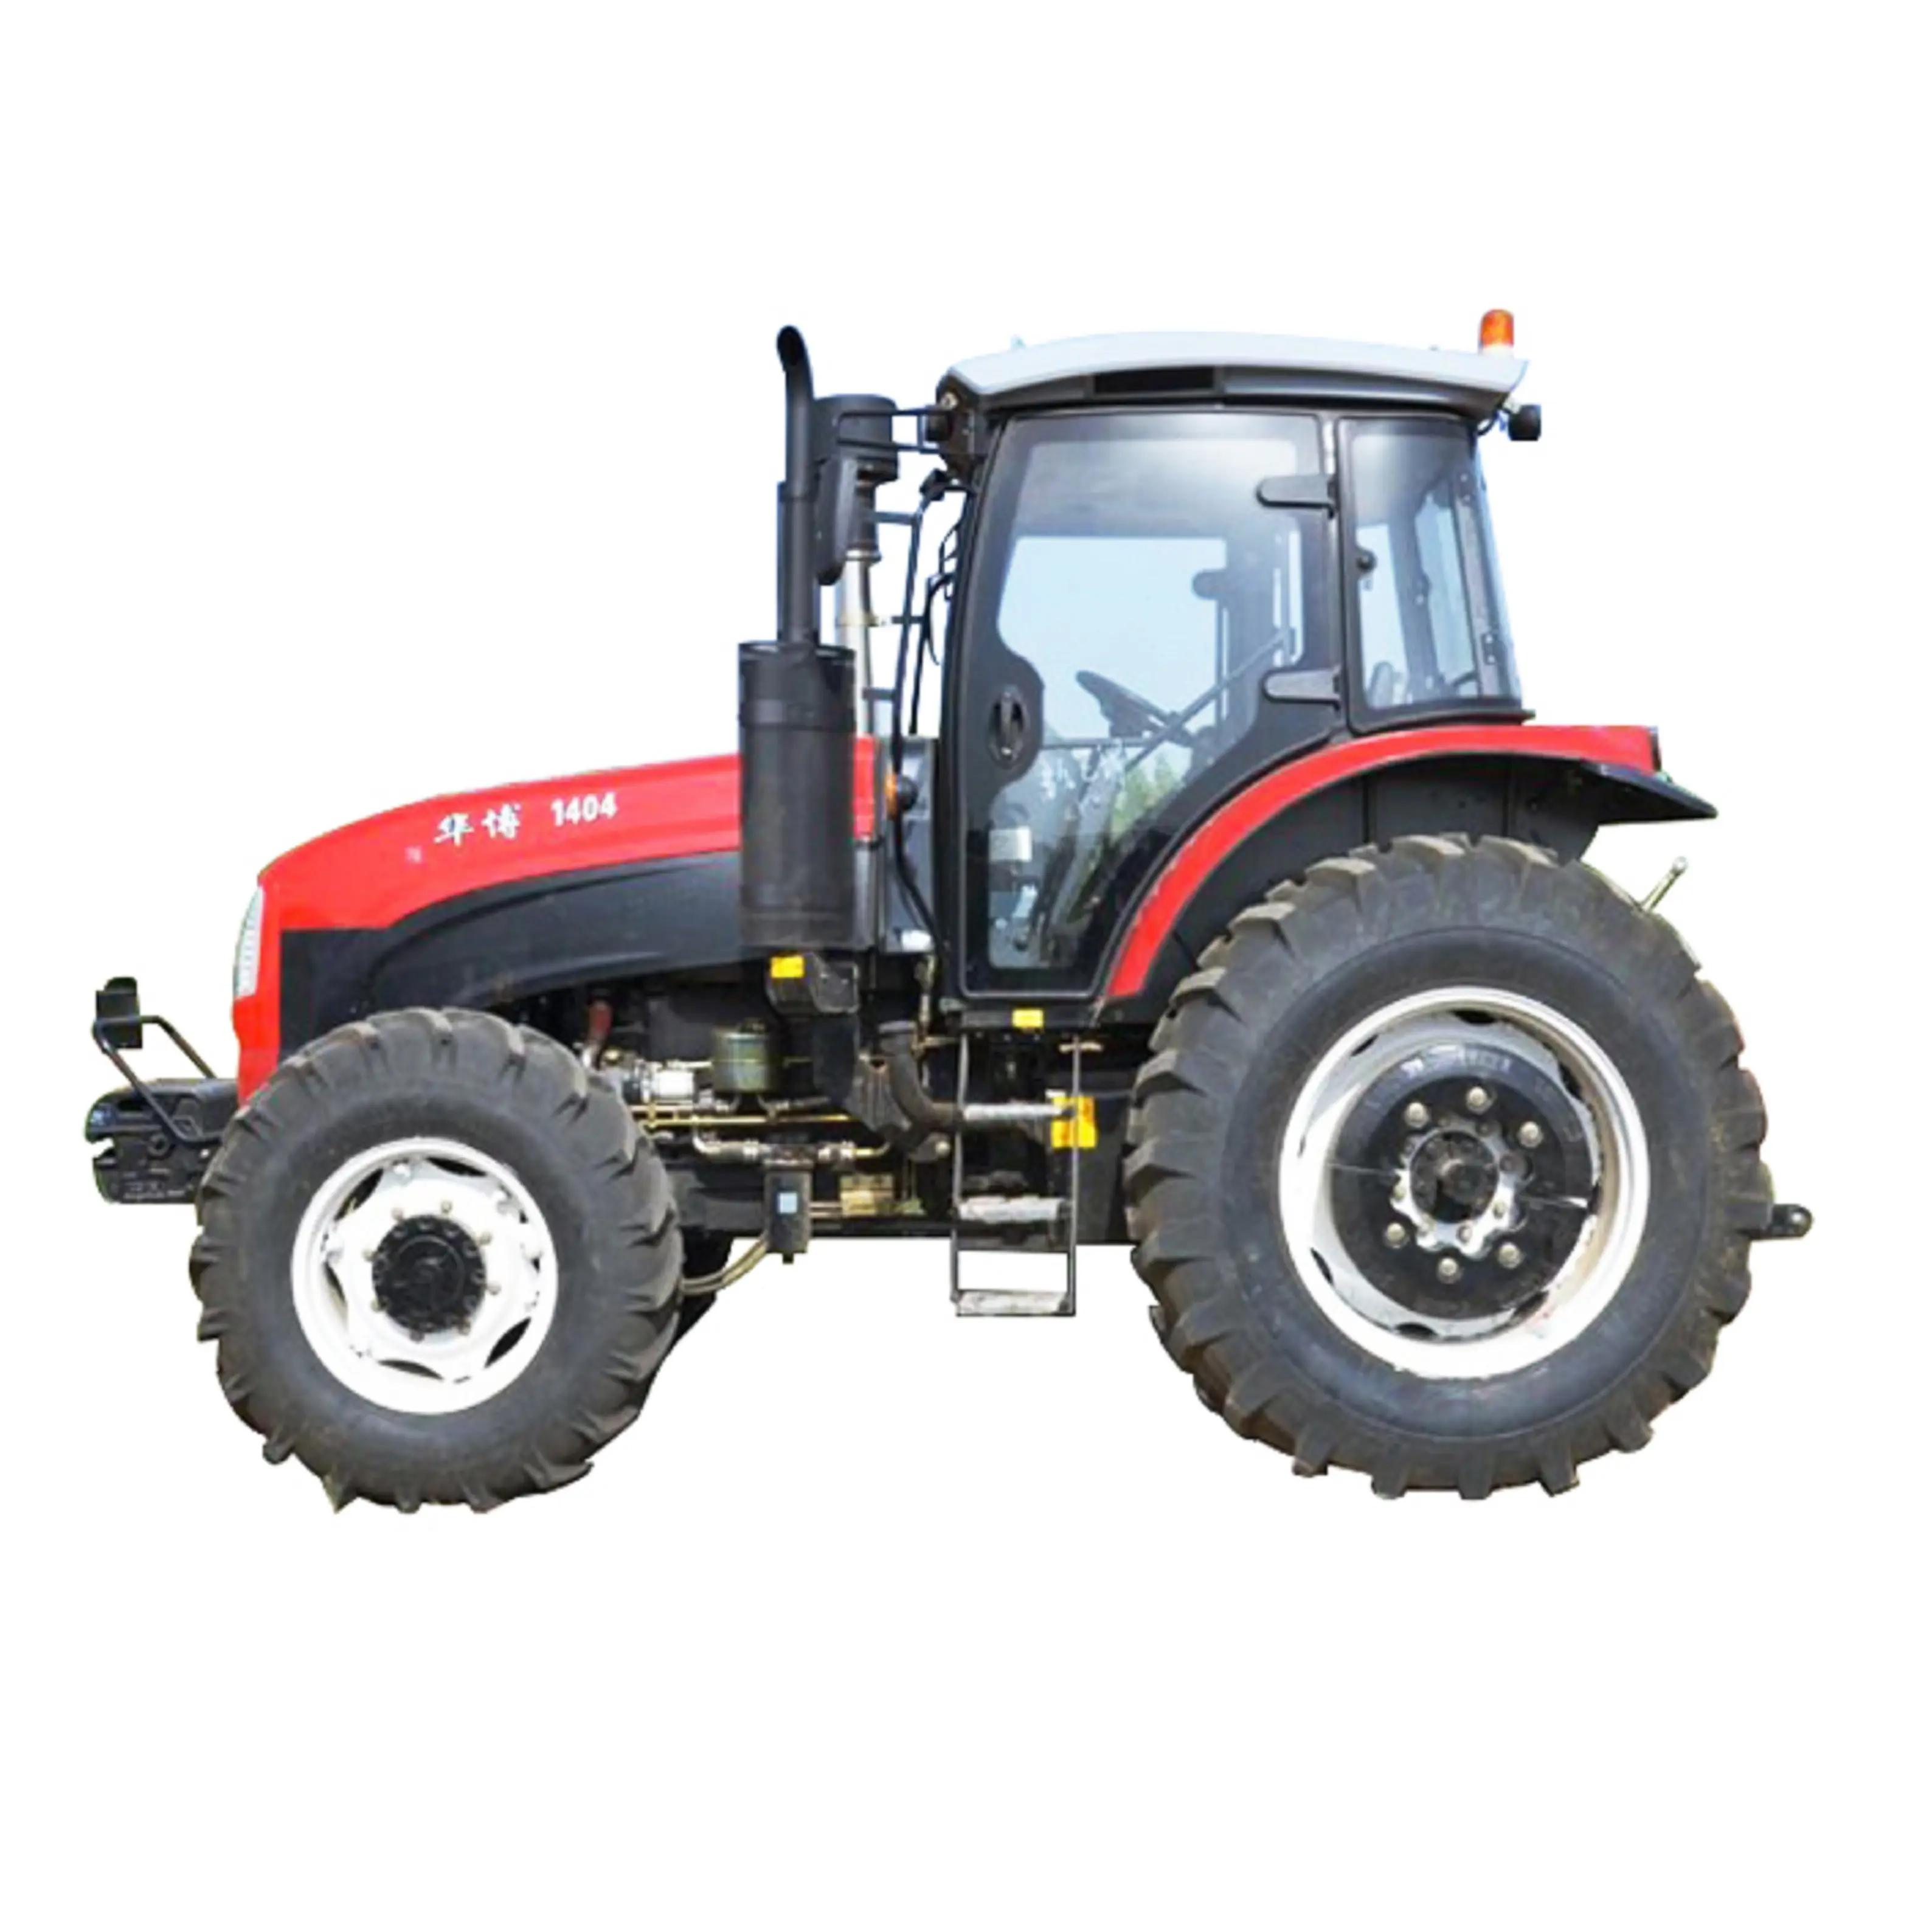 Tracteur agricole à quatre roues, prix Direct d'usine Offre Spéciale, tracteur Massey ferguson aux meilleurs prix